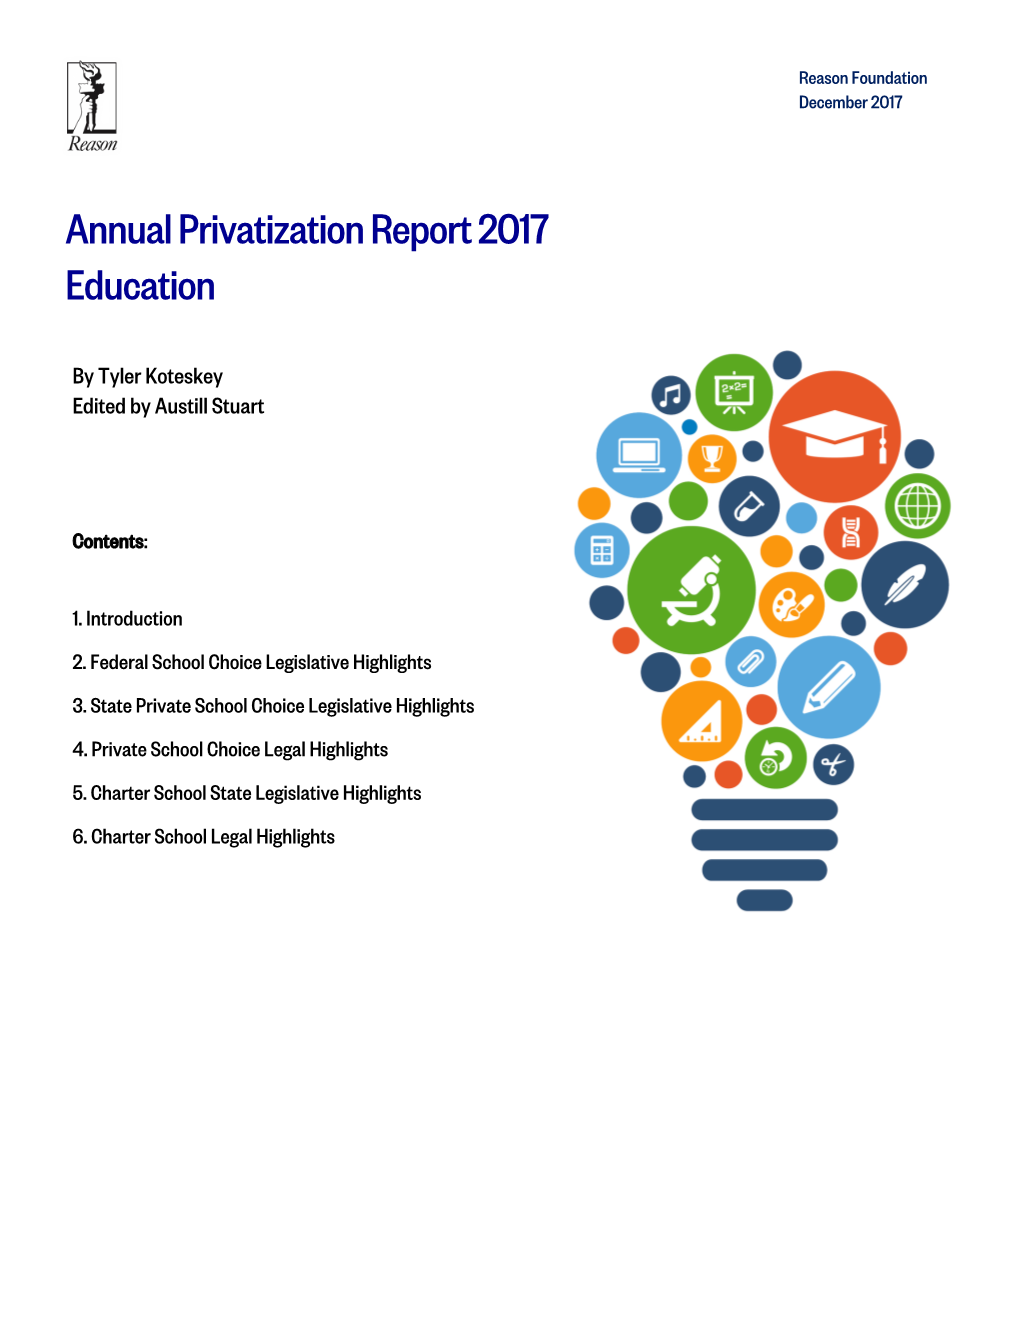 Annual Privatization Report 2017 Education